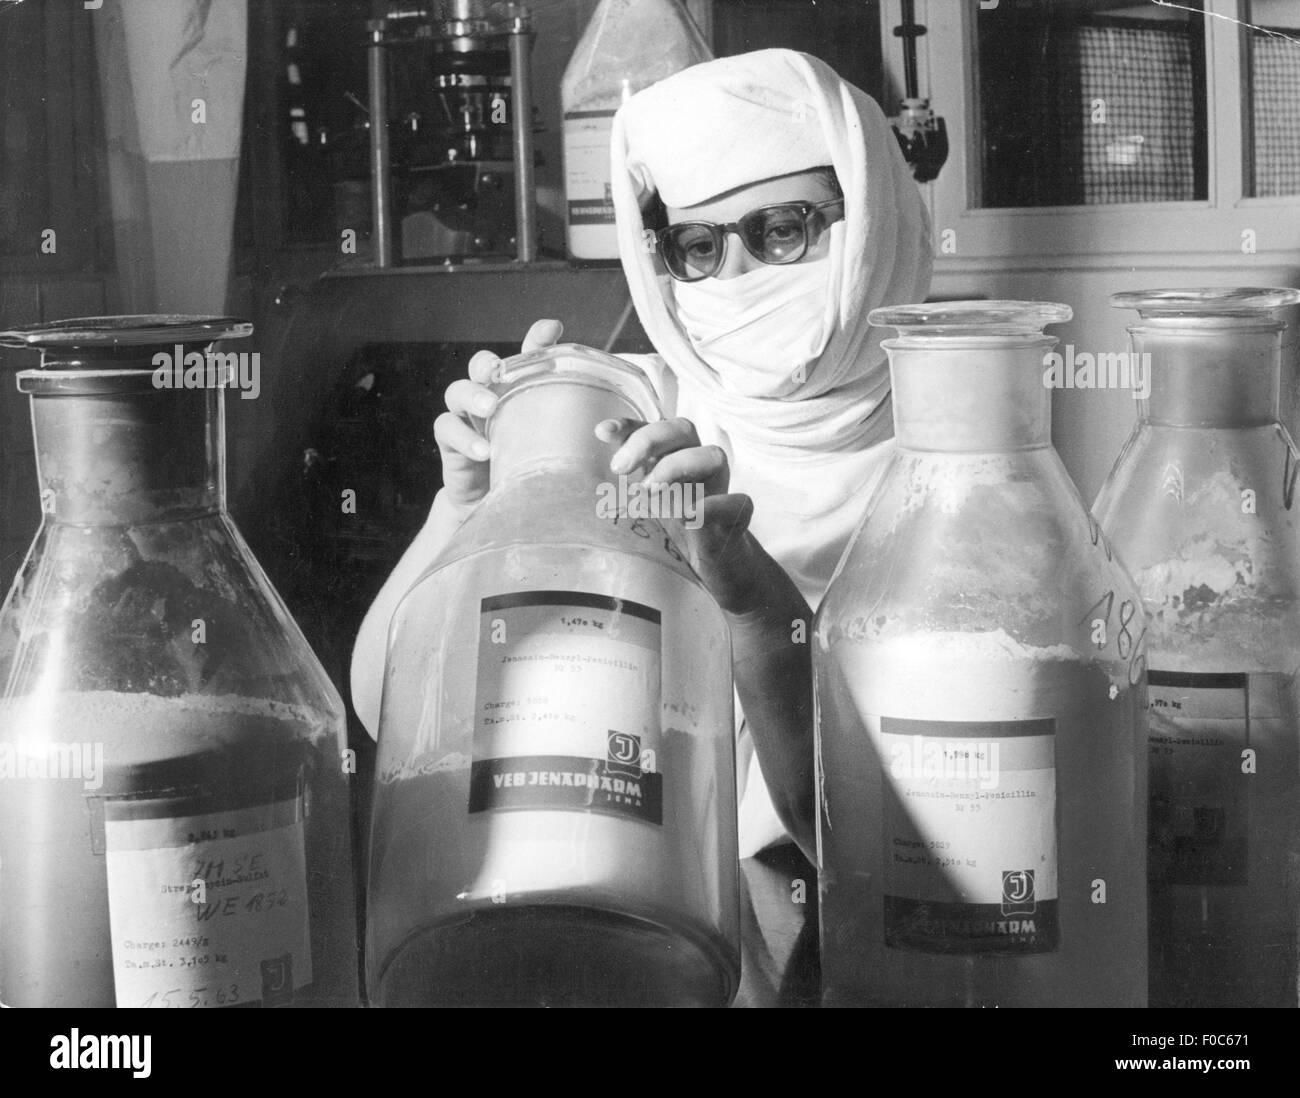 Médecine, médicament, pénicilline, assistant de laboratoire vérifiant un échantillon de la production de pénicilline, VEB Jenapharm, Jena, 1964, droits additionnels-Clearences-non disponible Banque D'Images